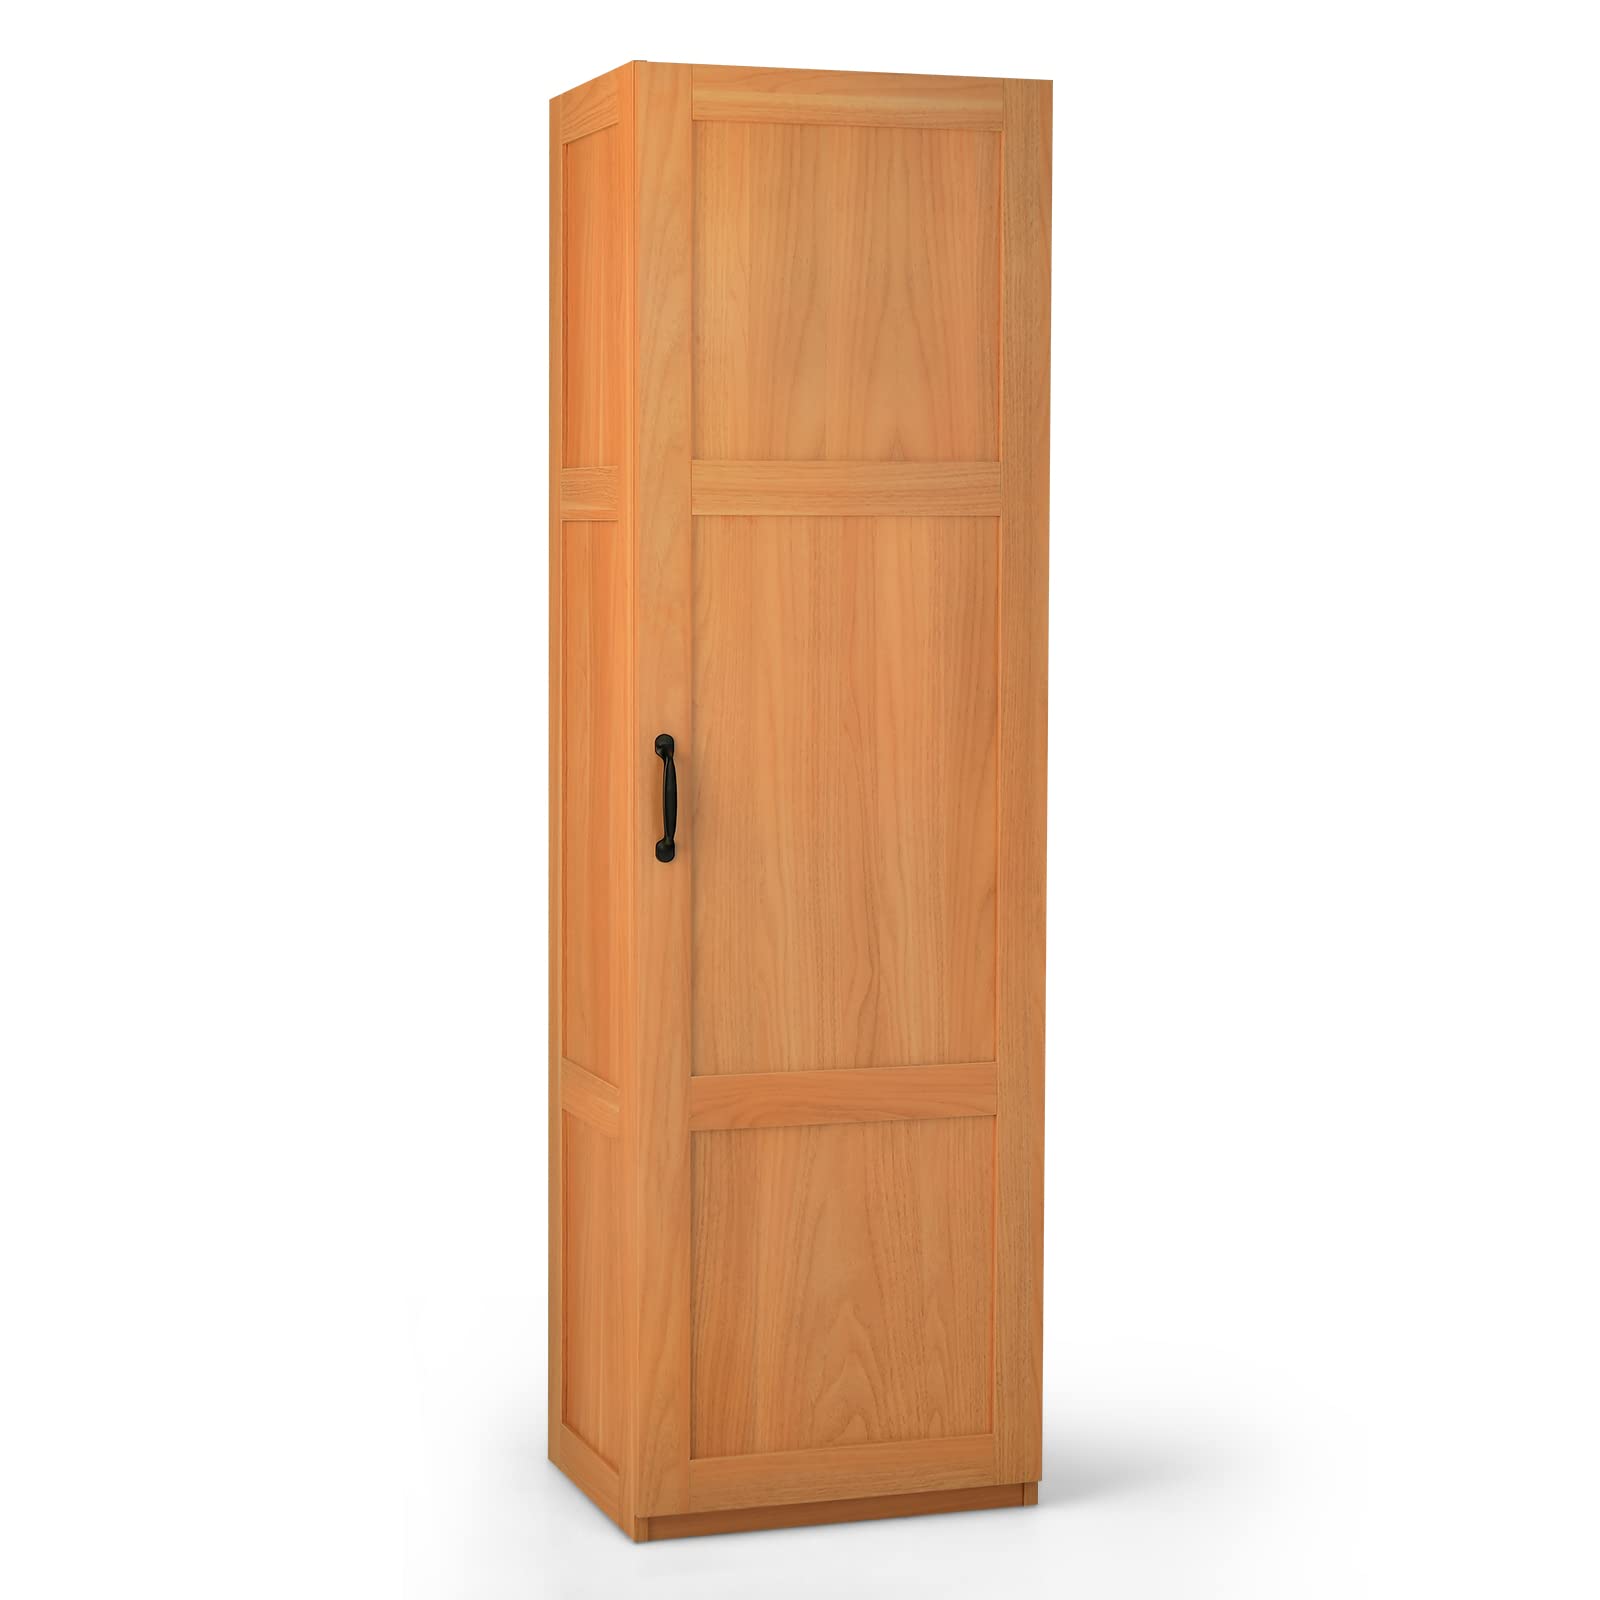 Giantex Kitchen Pantry, Tall Storage Cabinet Single Door, 4-Tier Floor Storage Cabinet for Bathroom (Oak Color)